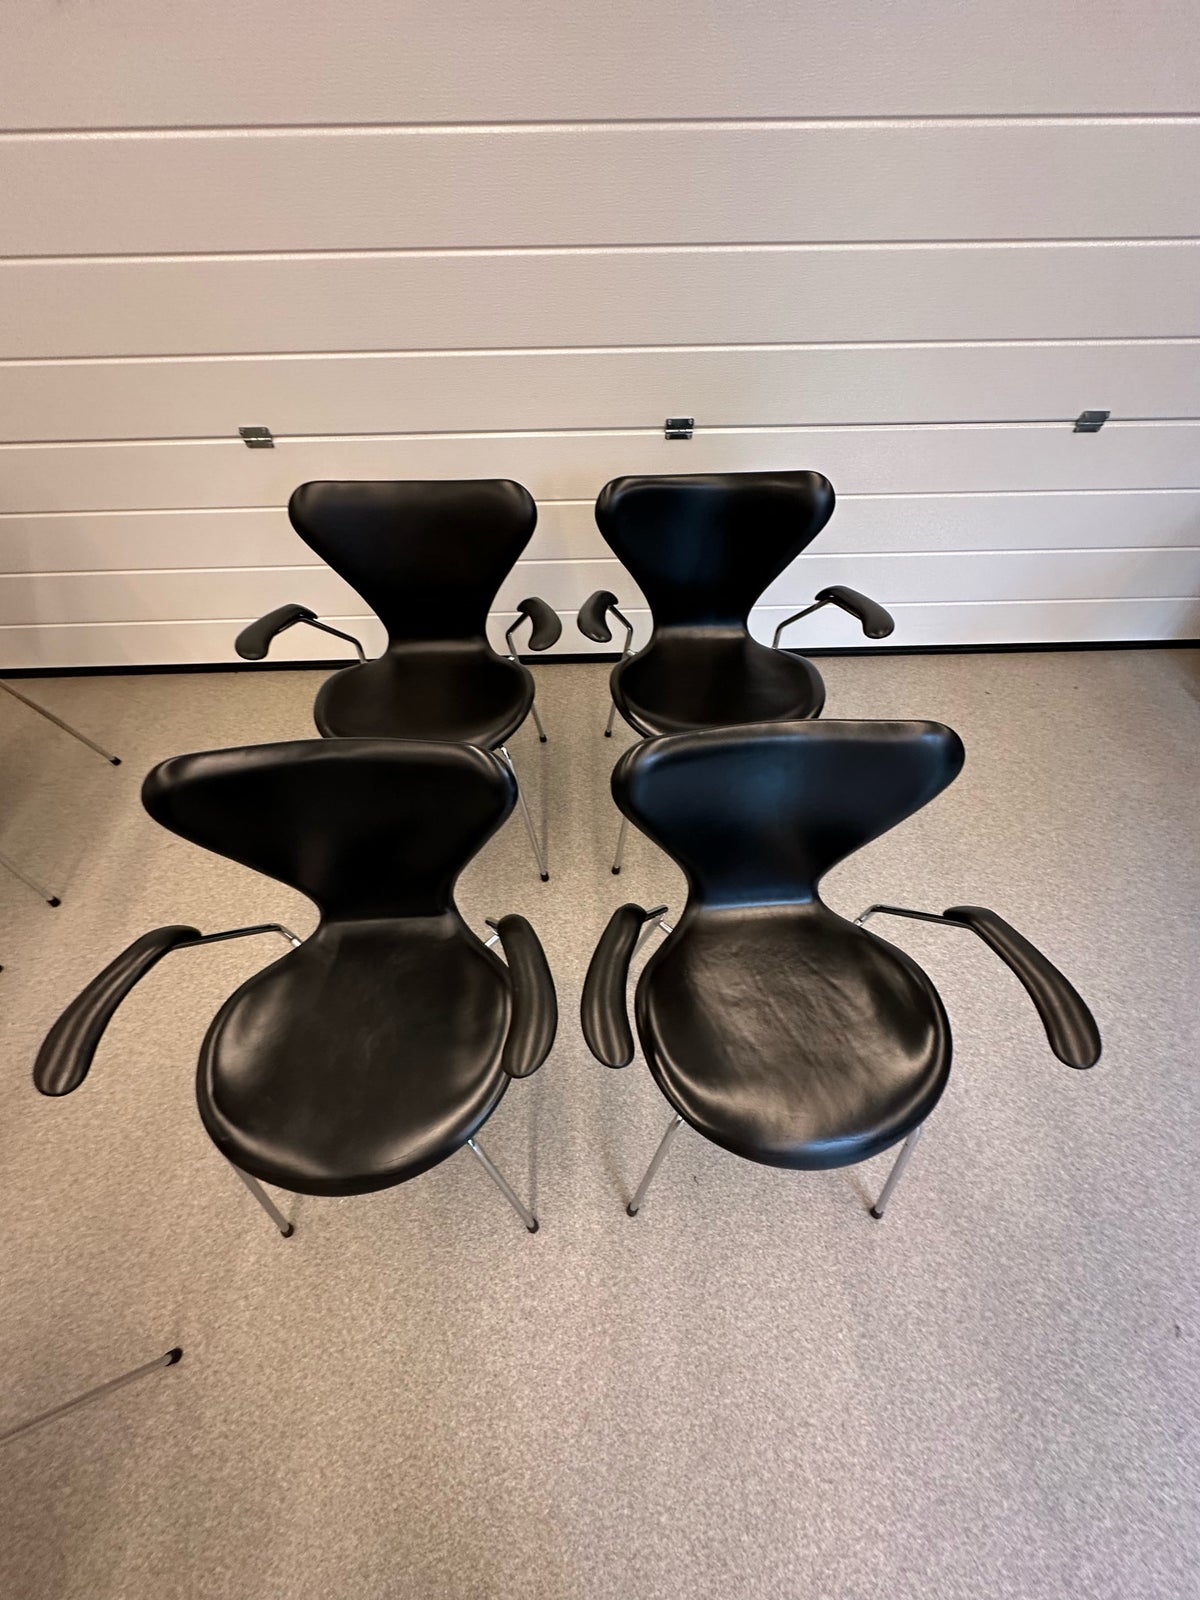 Arne Jacobsen, stol, 7 er stol med